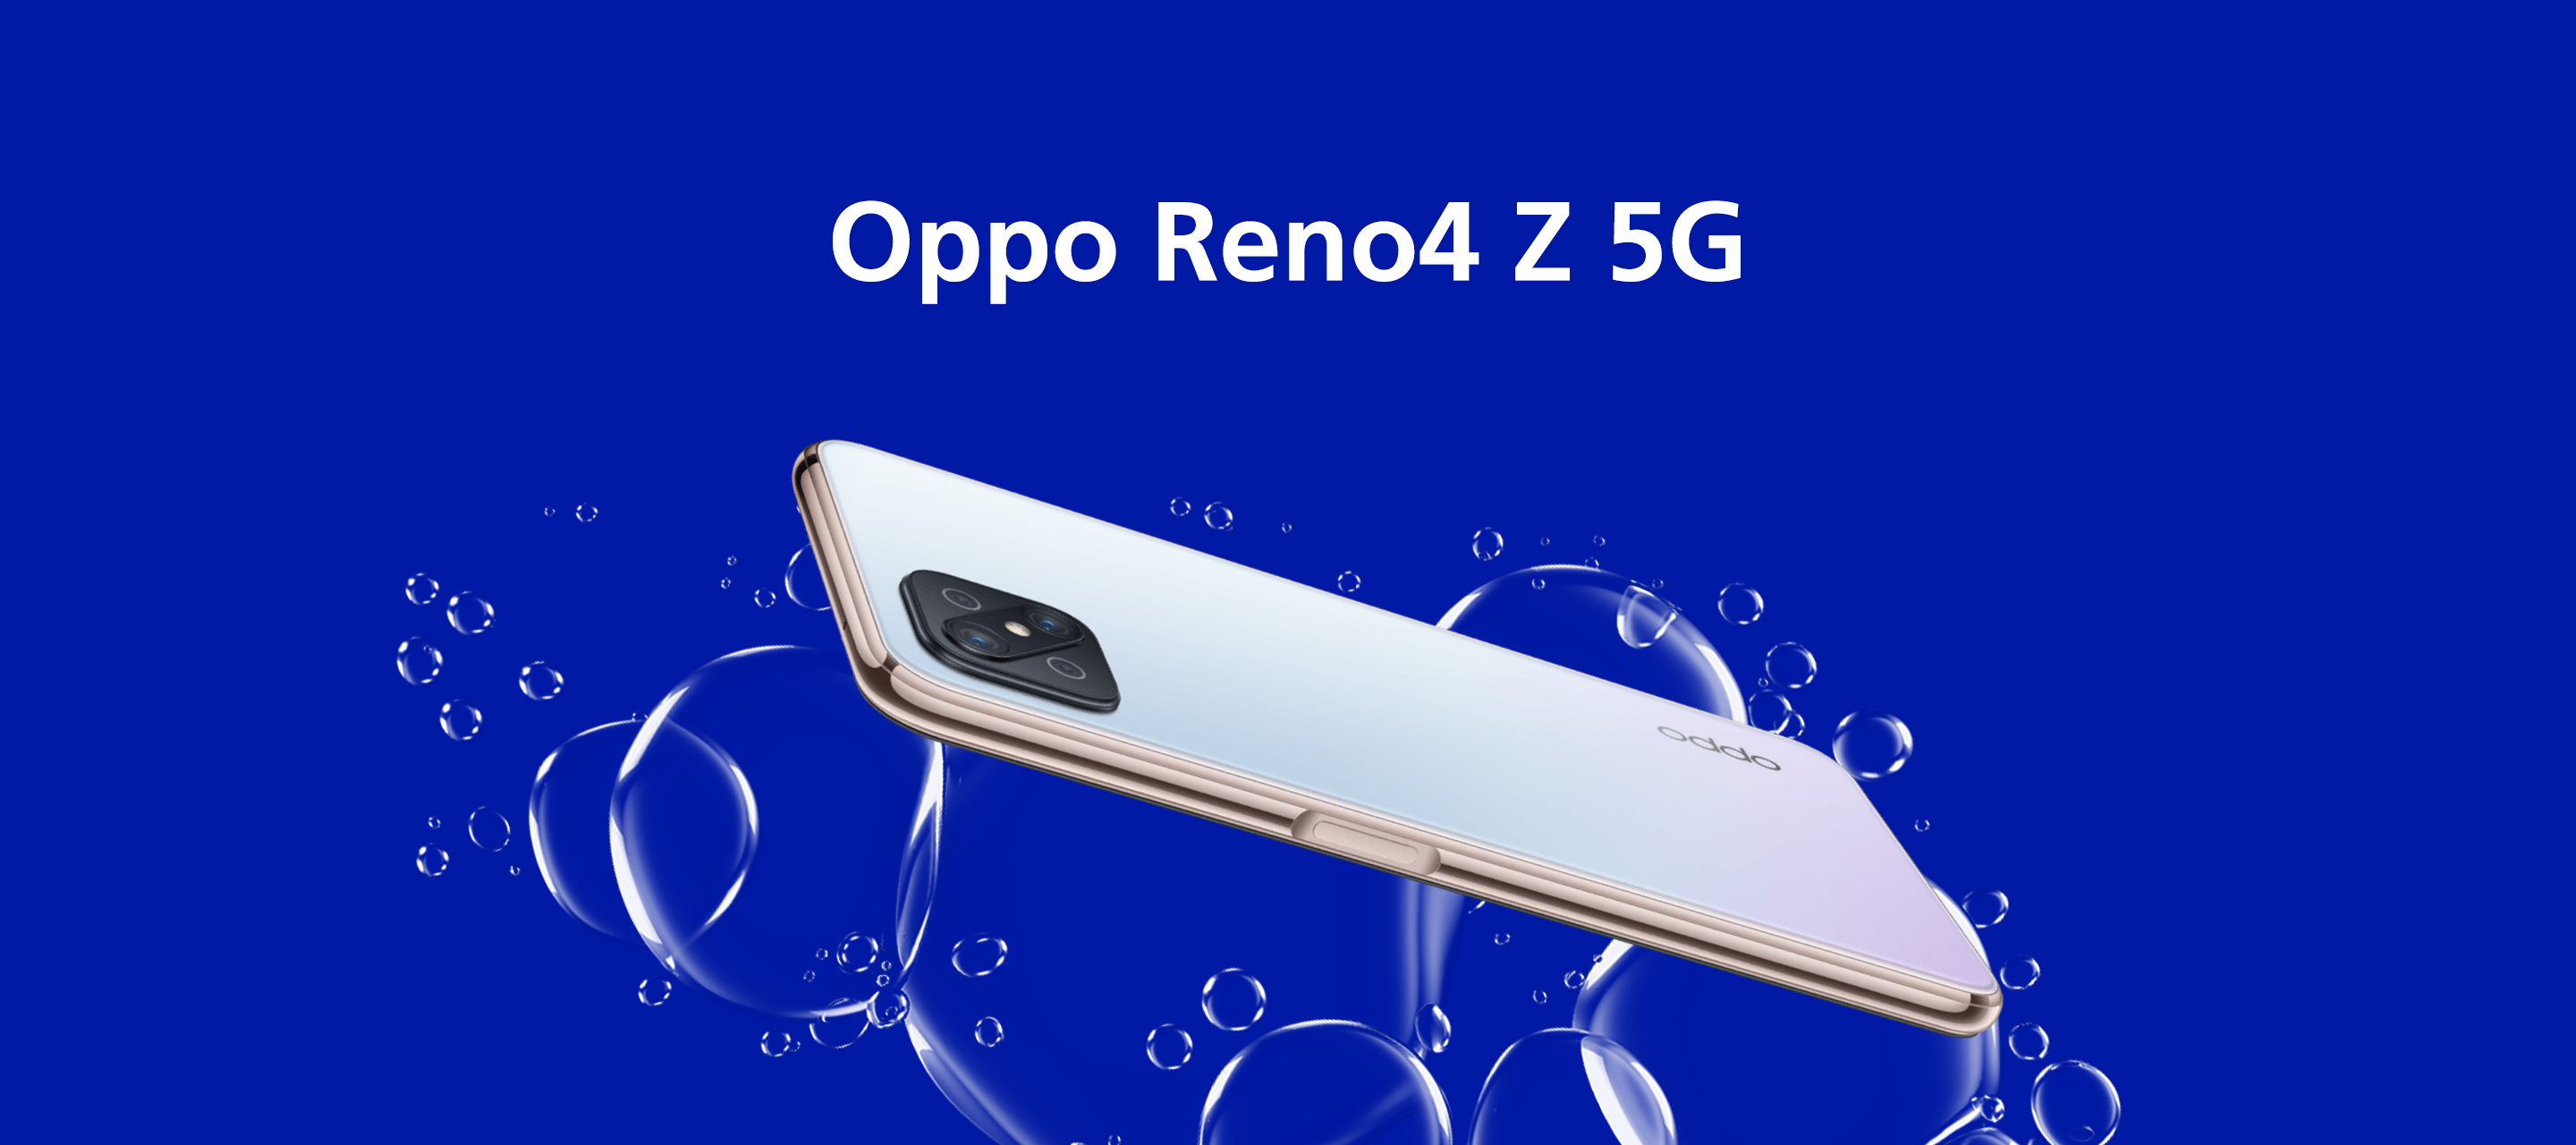 Zum Start von Oppo bei O₂: Das Oppo Reno4 Z 5G